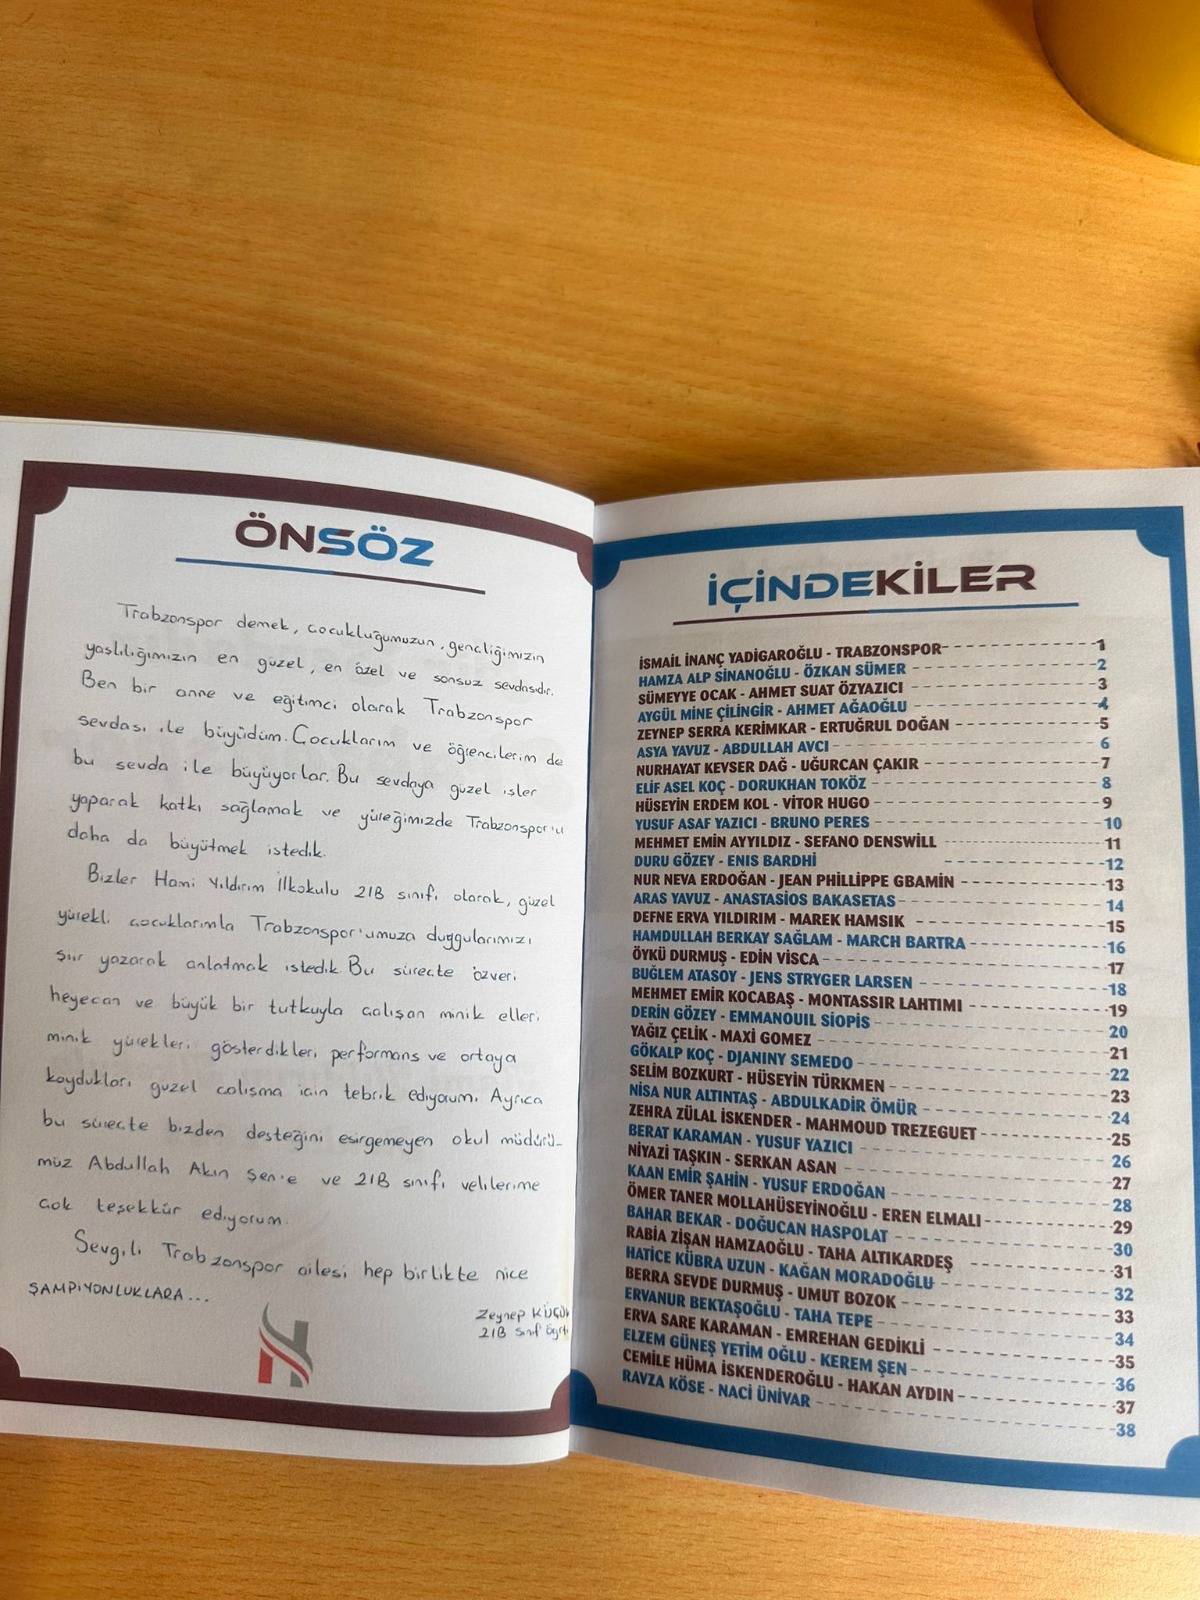 Minikler Trabzonspor futbolcularına şiirler yazdı